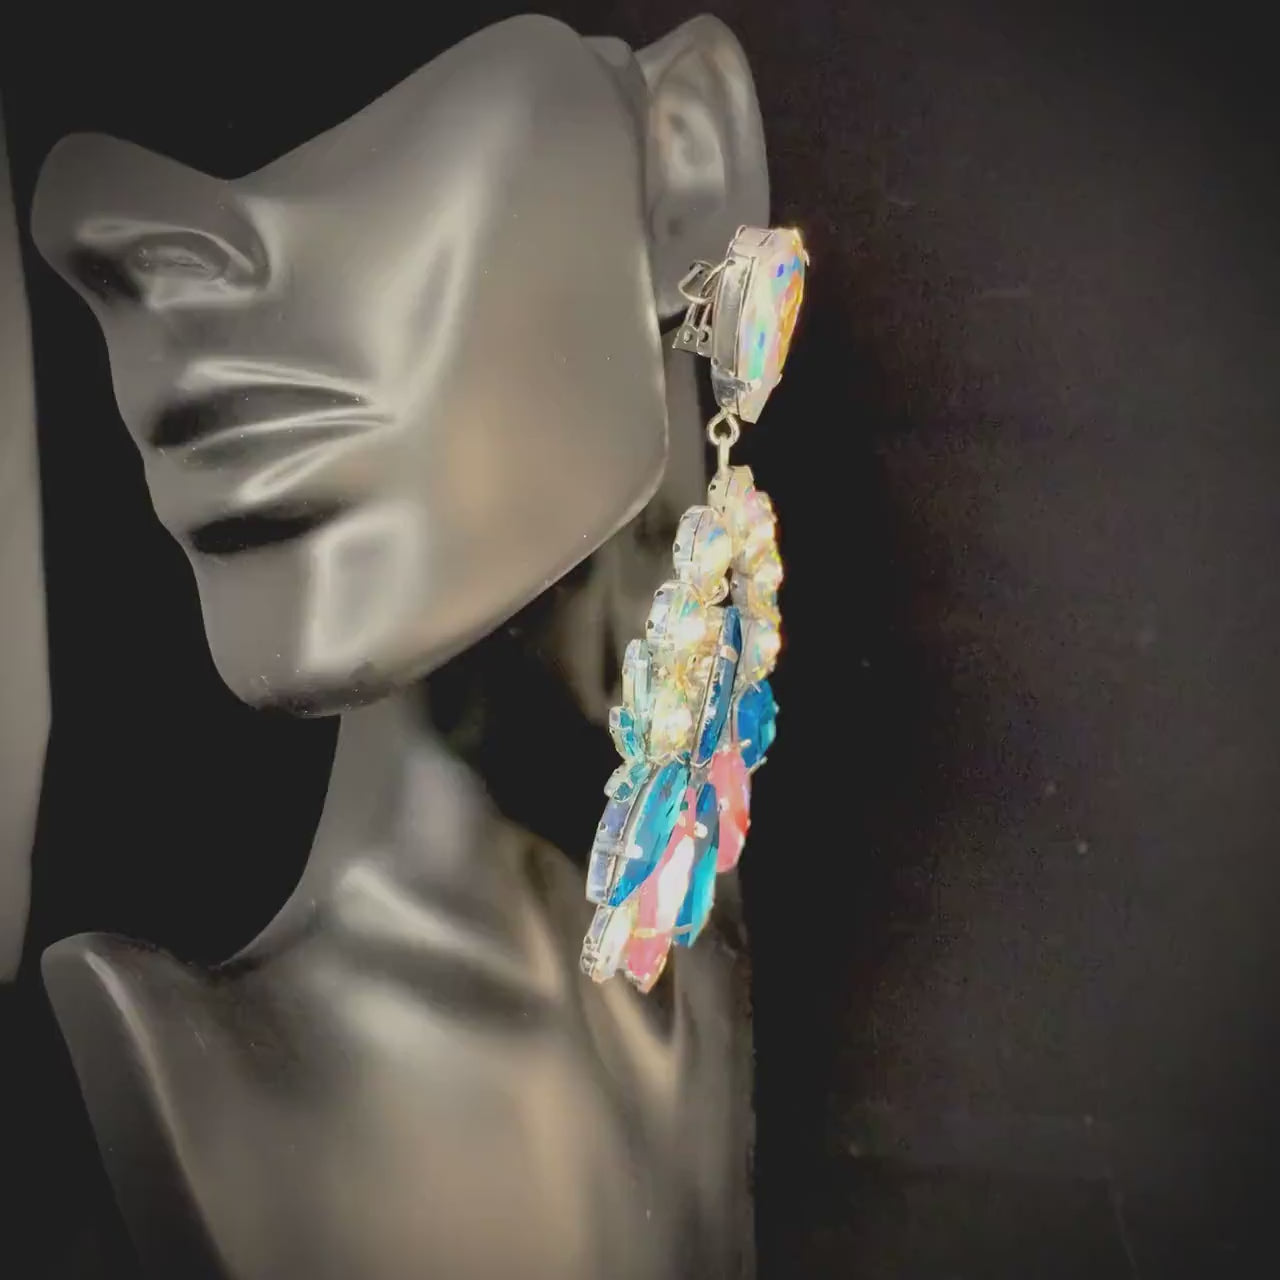 Crystal Hoop Earrings / Clip On or Pierced / Statement Earrings / Crystal Jewelry / Dress Earrings / Drag Queen